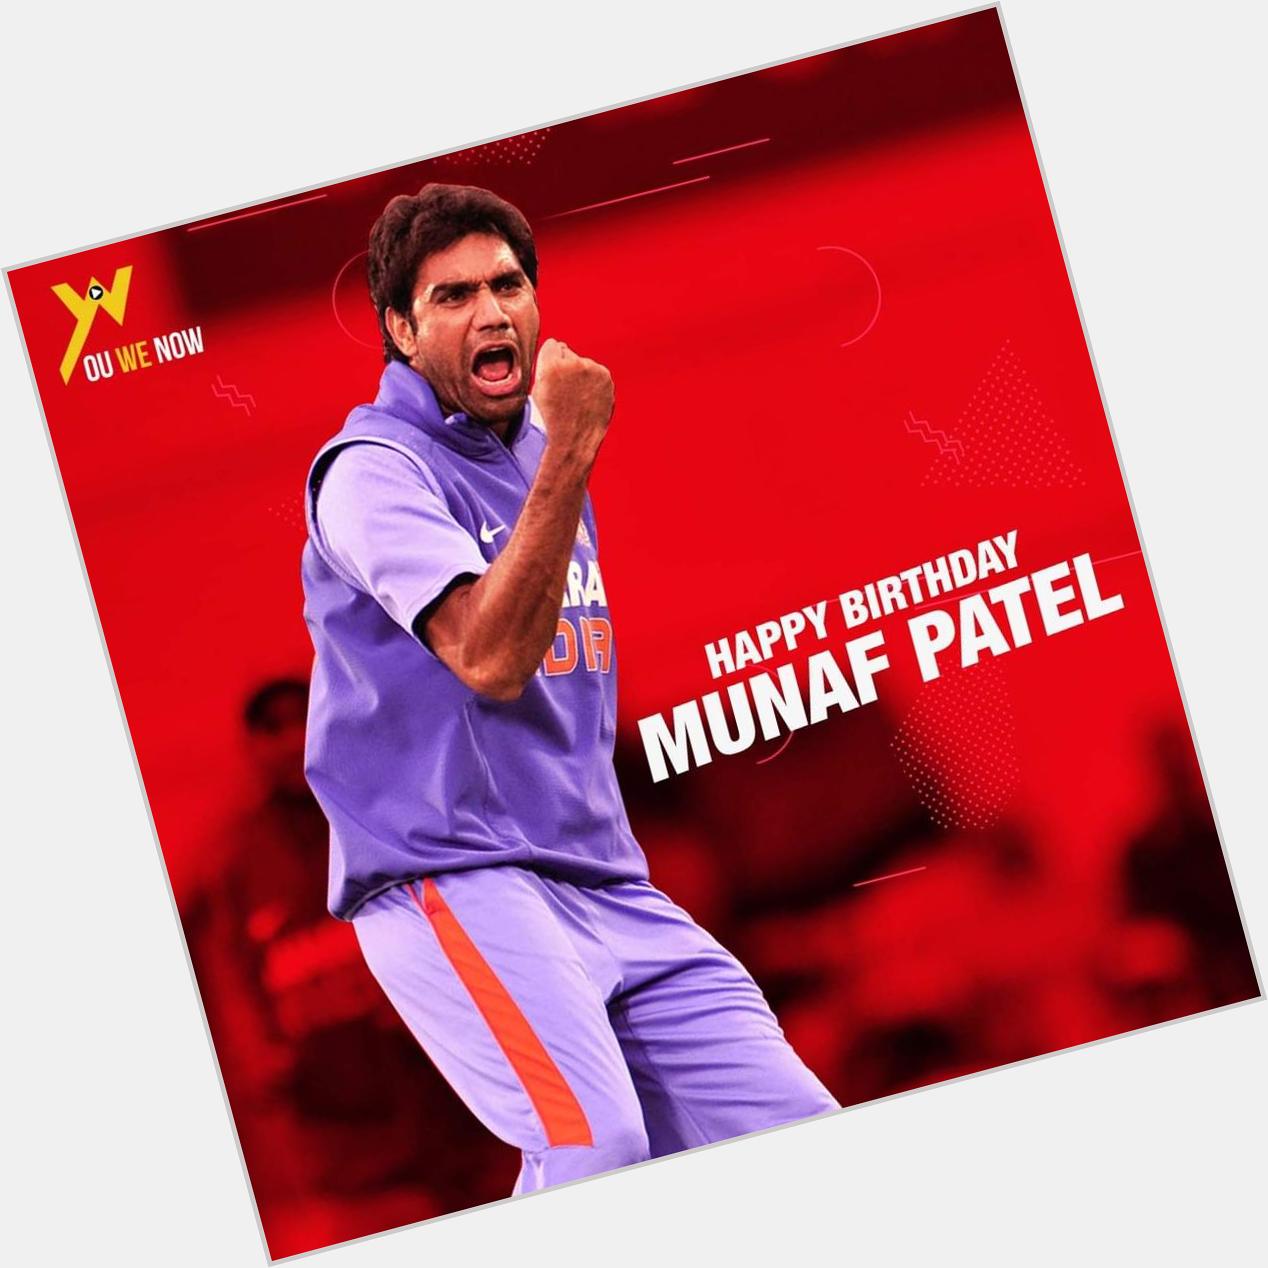 Wish you a very happy birthday Munaf Patel.  